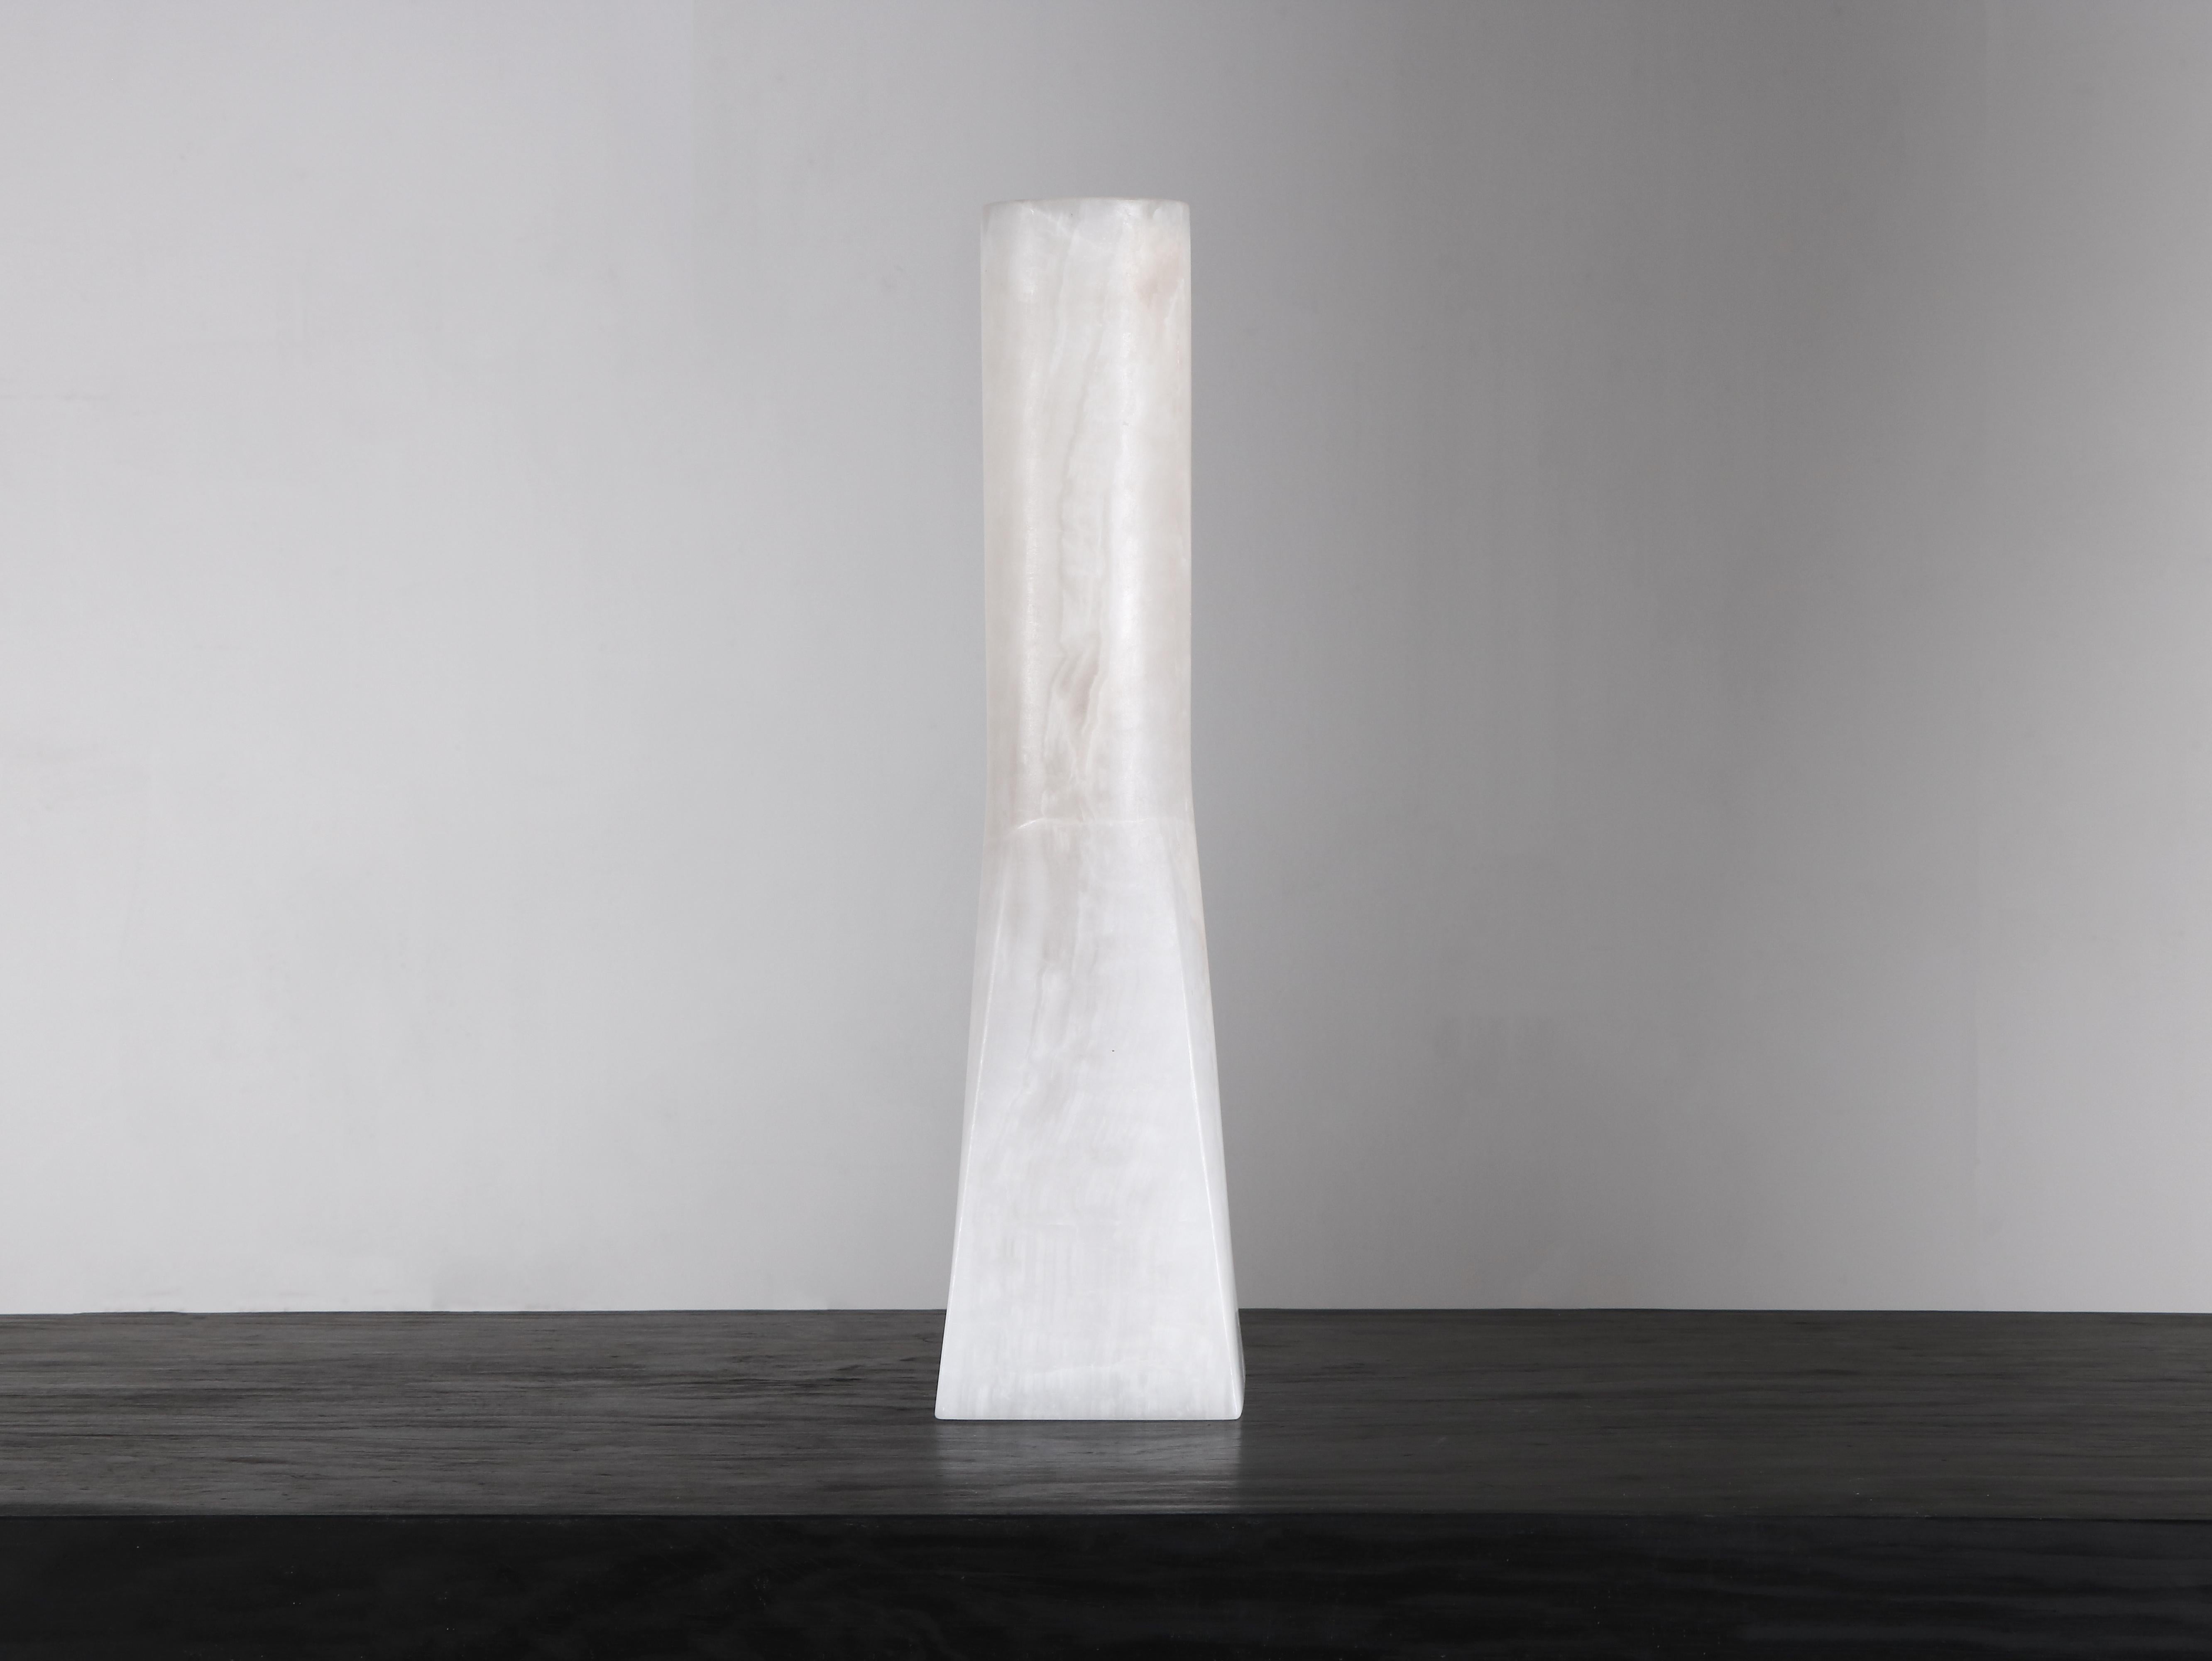 Vase Ruta de Lucas Tyra Morten
Edition limitée de 10 + 2 AP
Signé
Dimensions : D10 x W19 x H40 cm
Matériau : Onyx

Les objets sont accompagnés d'un 